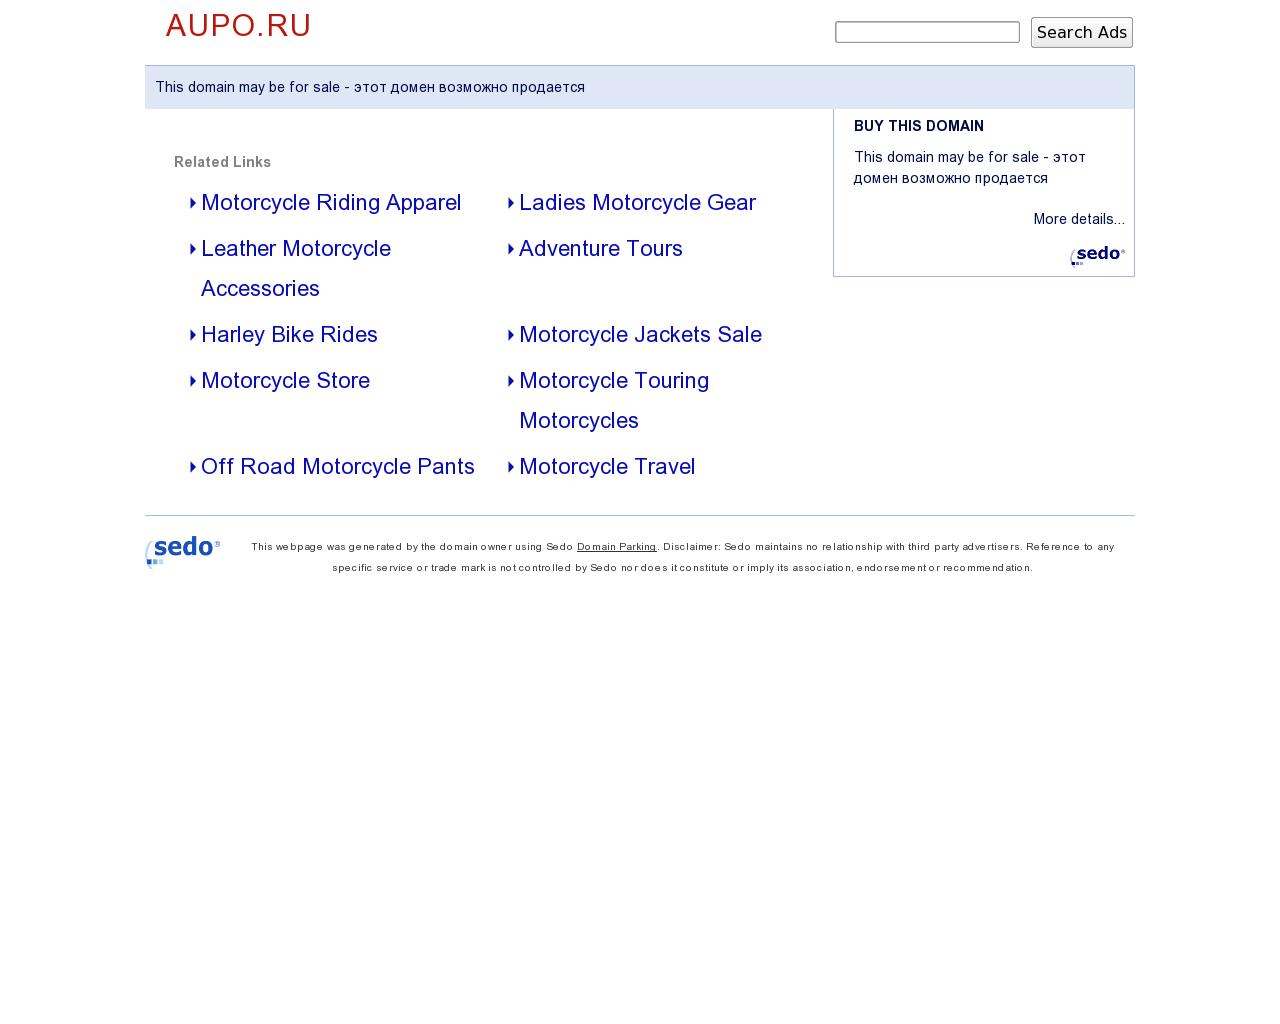 Изображение сайта aupo.ru в разрешении 1280x1024